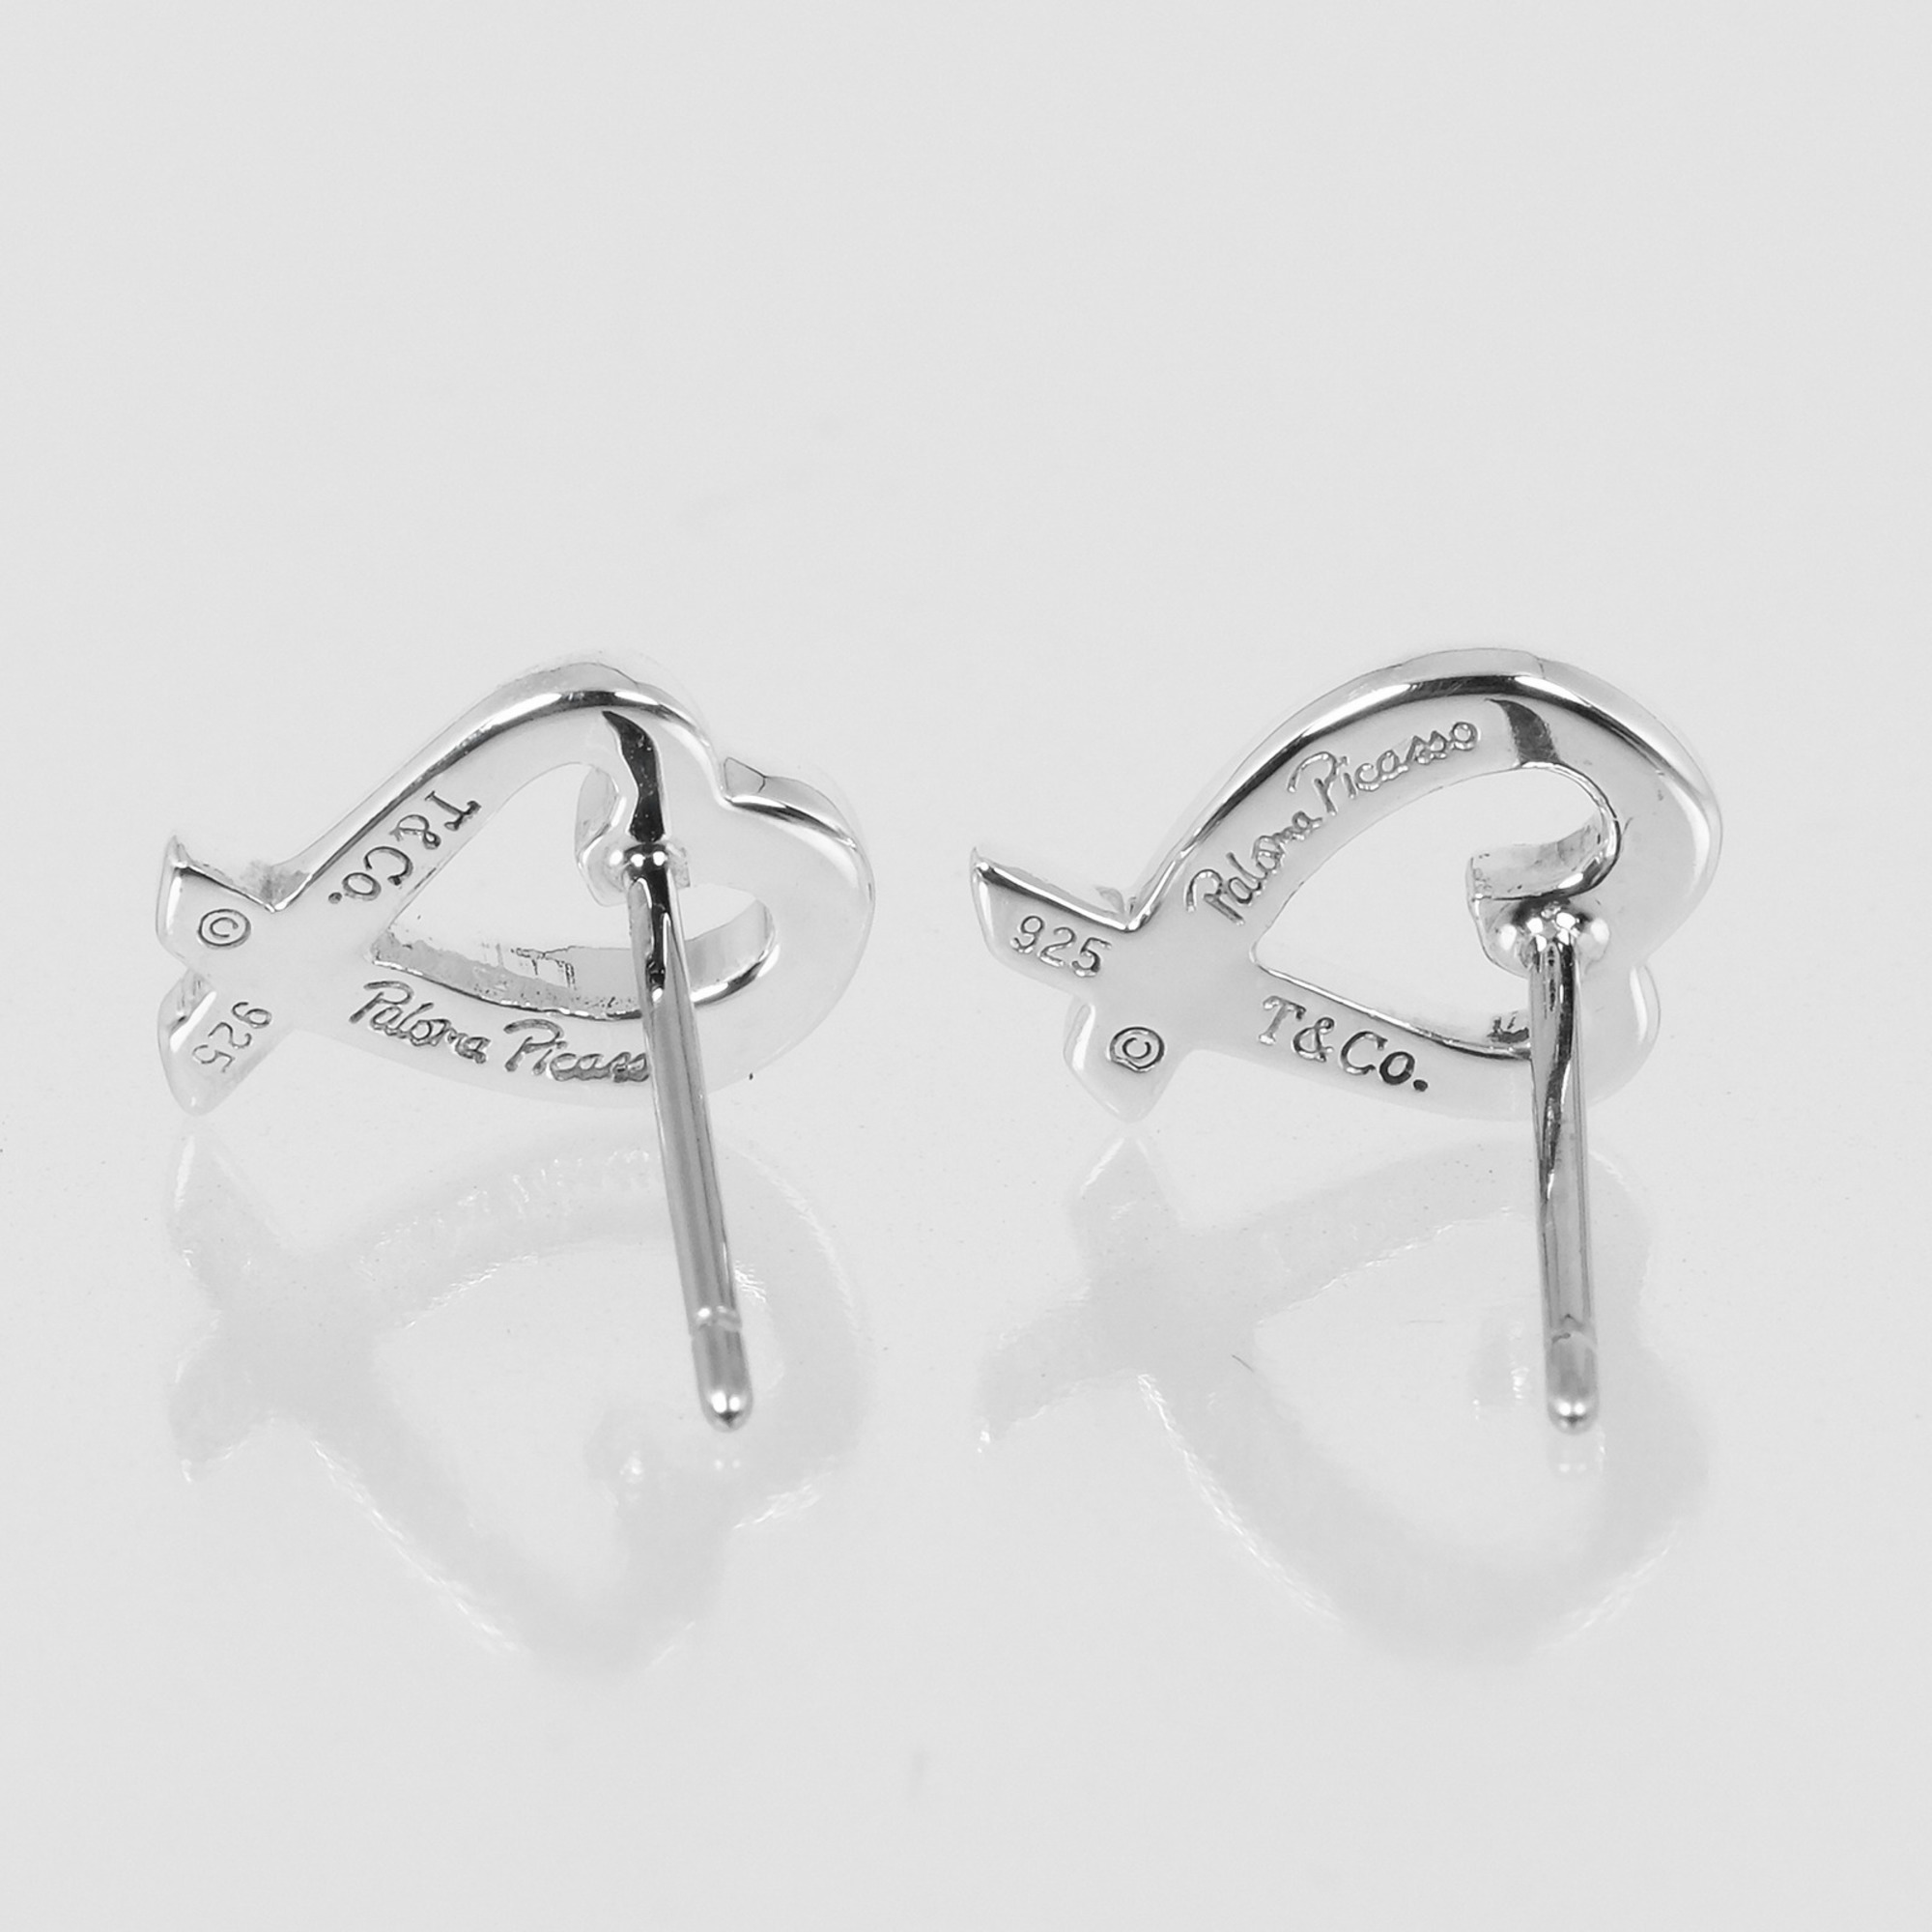 Tiffany & Co. Loving Heart Earrings, 925 Silver, approx. 1.58g